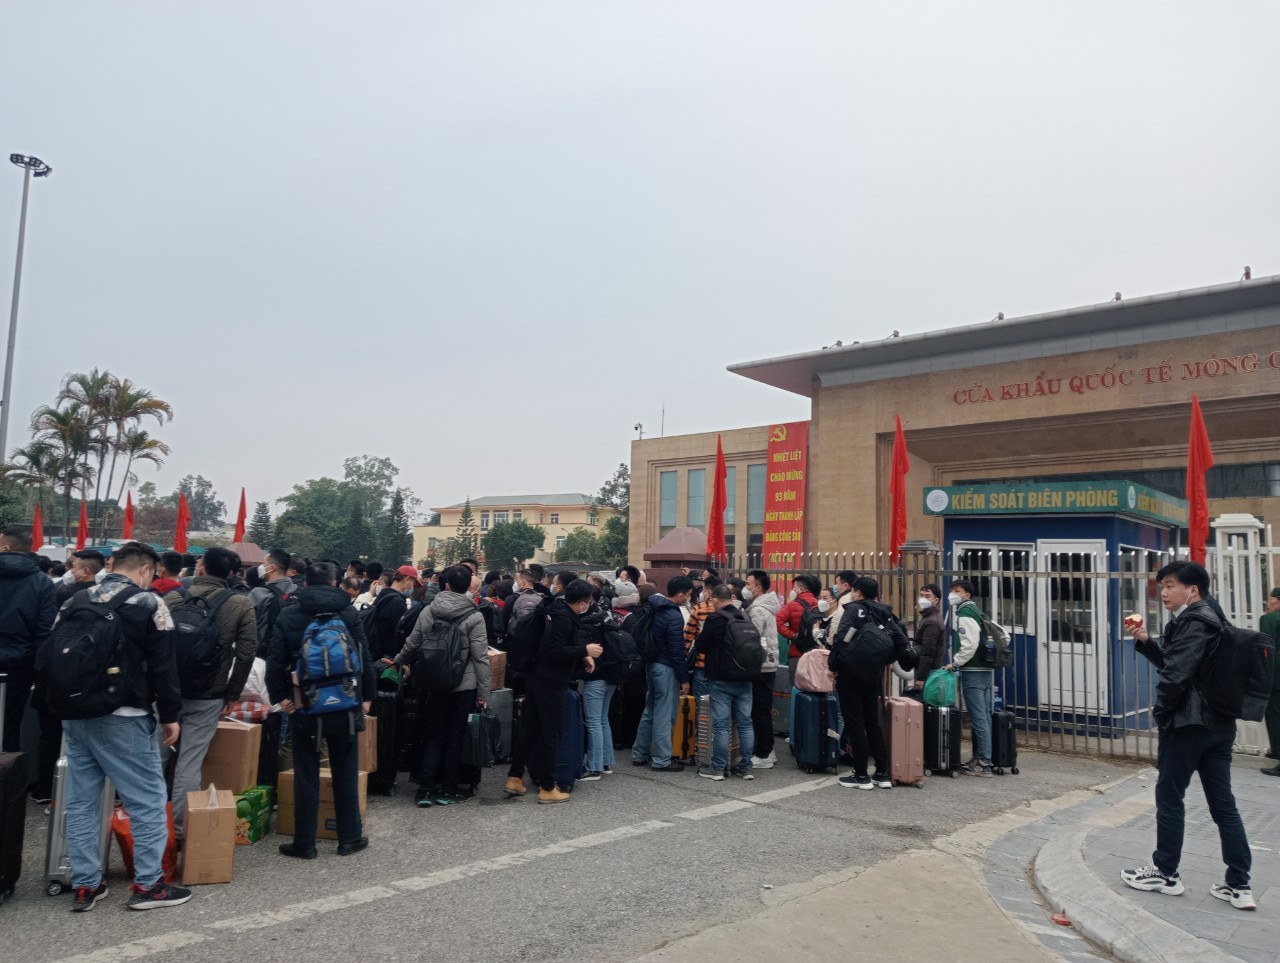 Sáng 8-1, hơn 1.000 người Trung Quốc làm thủ tục xuất cảnh tại Cửa khẩu Quốc tế Móng Cái - Ảnh 2.